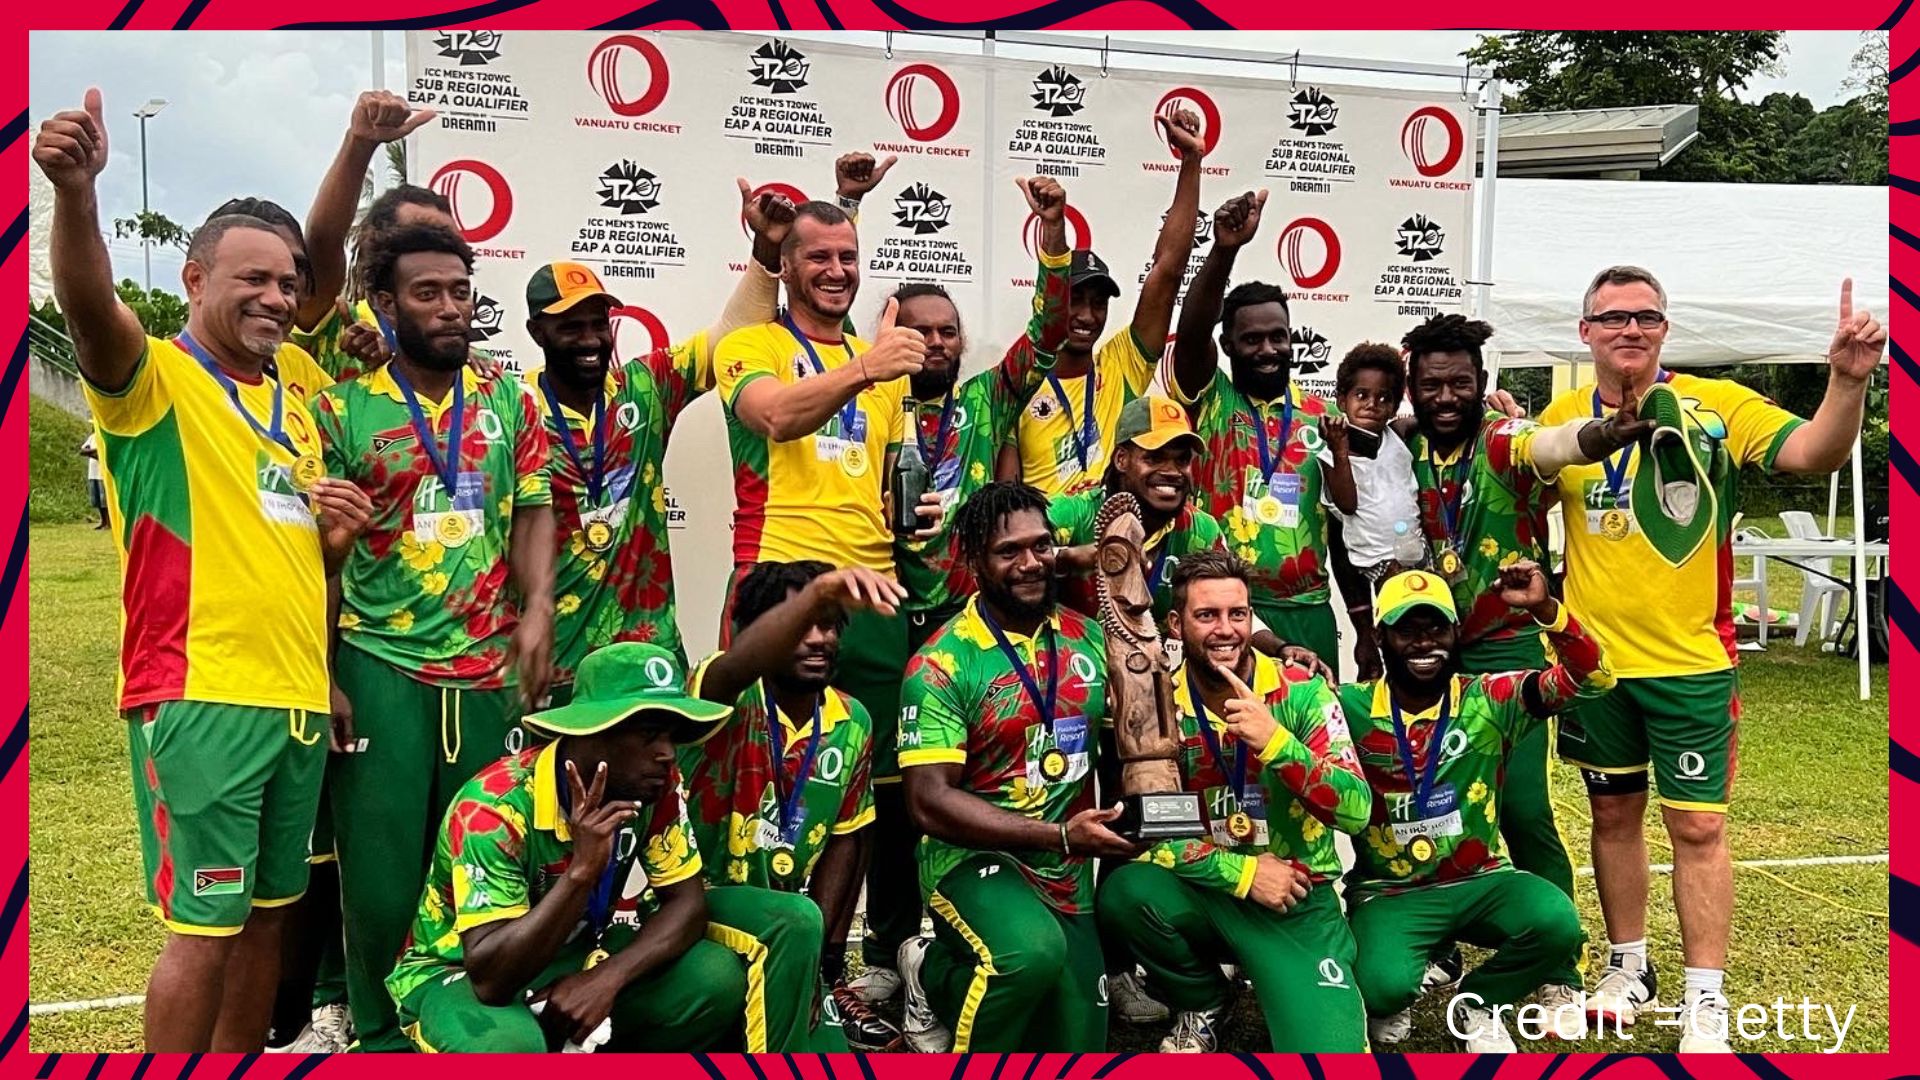 Vanuatu cricket team